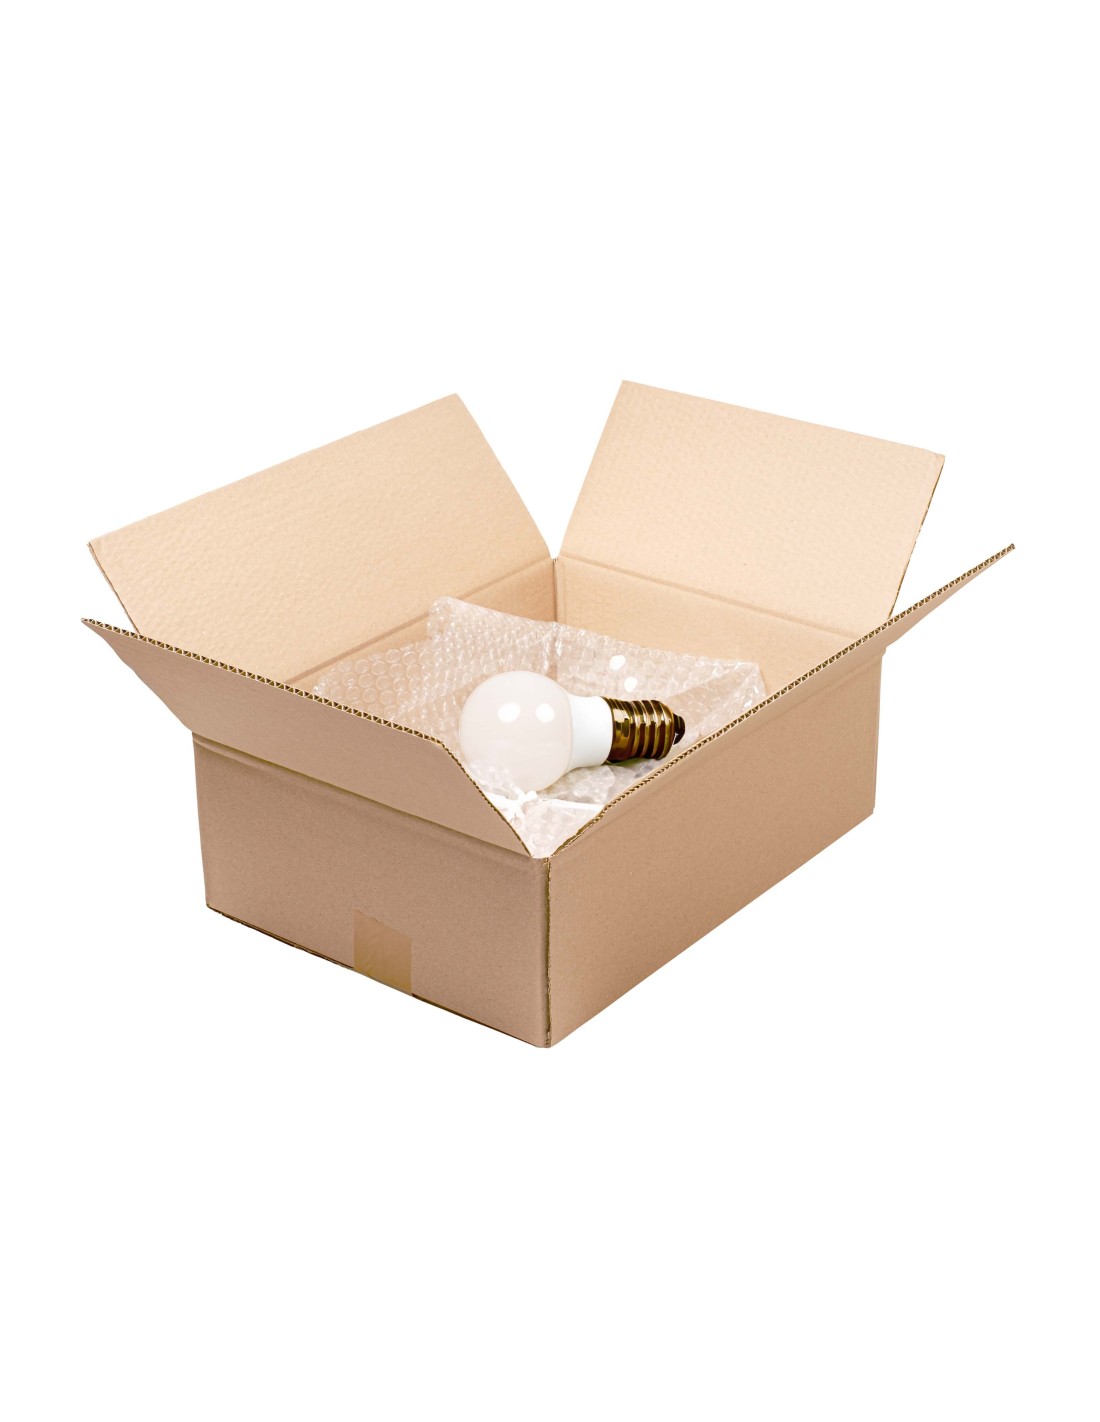 IMBALLAGGI 2000-Pluriball Imballaggio, 1Pz 1x100M 55gr/mq, Ideale per  Spedizione Trasloco e Trasporto-Plastica per Imballaggio con Bolle Valida  come Imballaggio per Spedizioni e Protezione Oggetti : :  Cancelleria e prodotti per ufficio